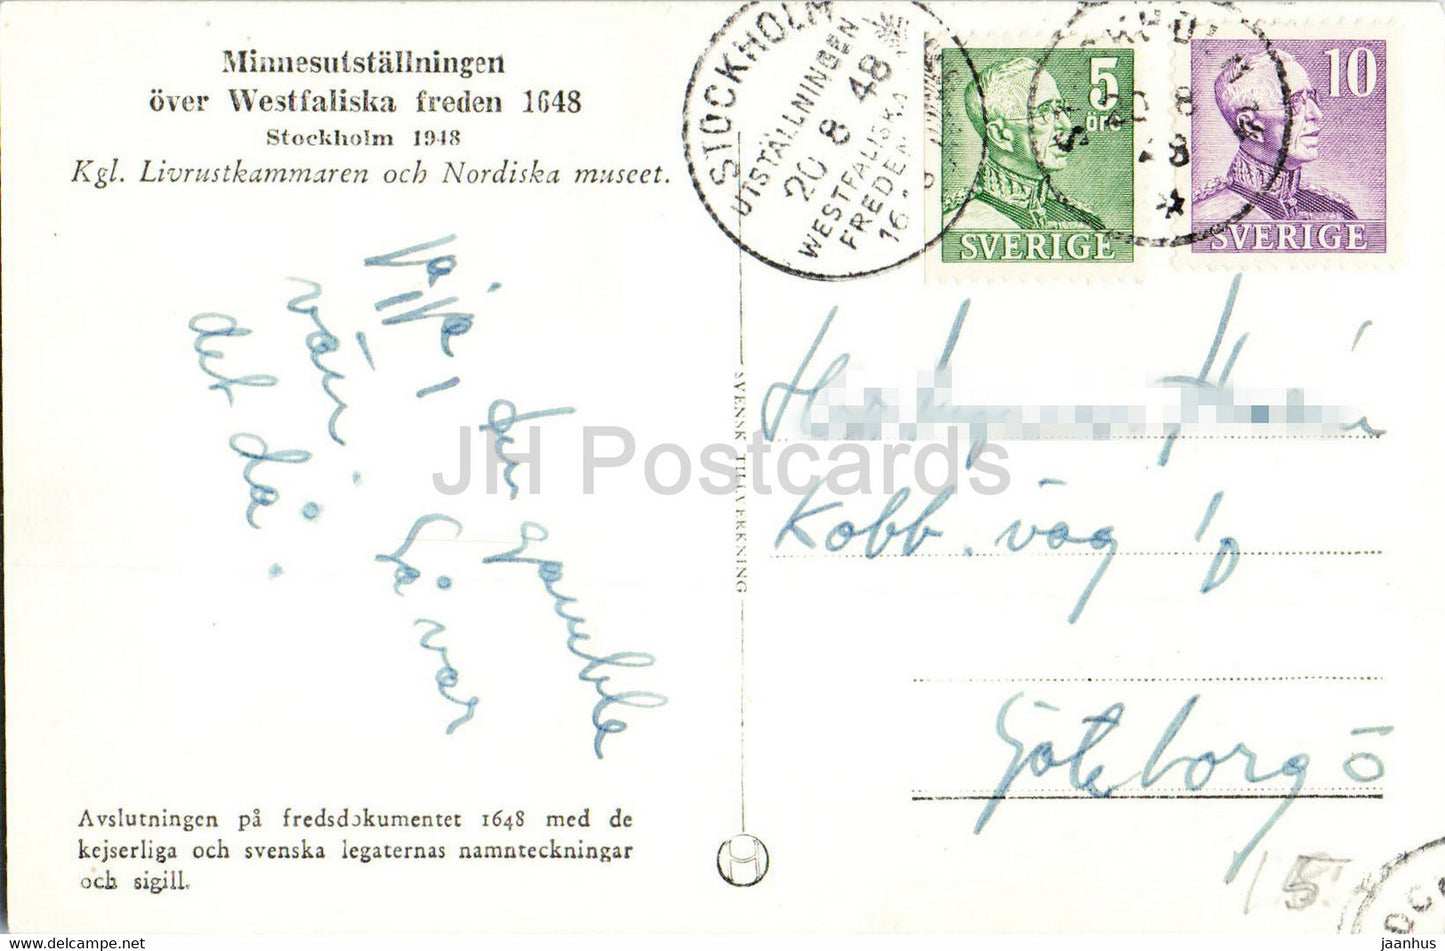 Minnesutstallningen sur Westfaliska freden 1648 - Traité de paix de Westphalie - carte postale ancienne - 1948 - Suède - utilisé